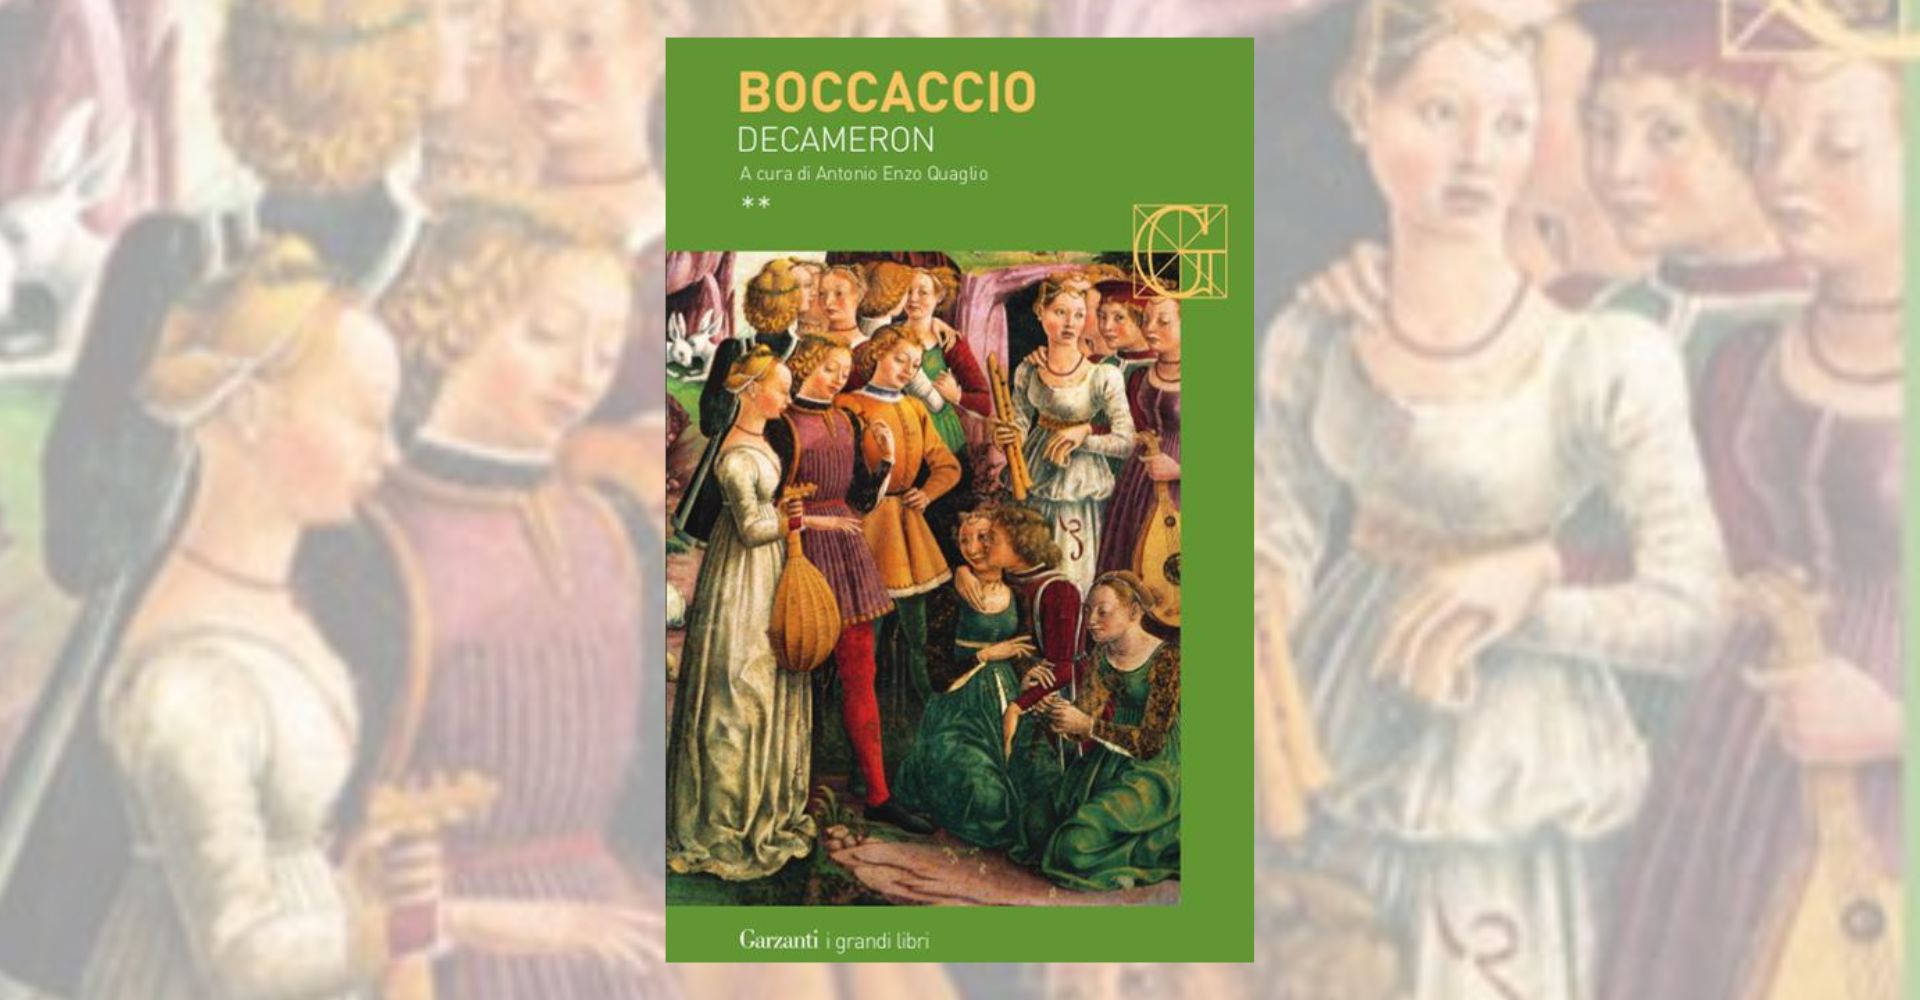 La copertina del Decameron di Giovanni Boccaccio